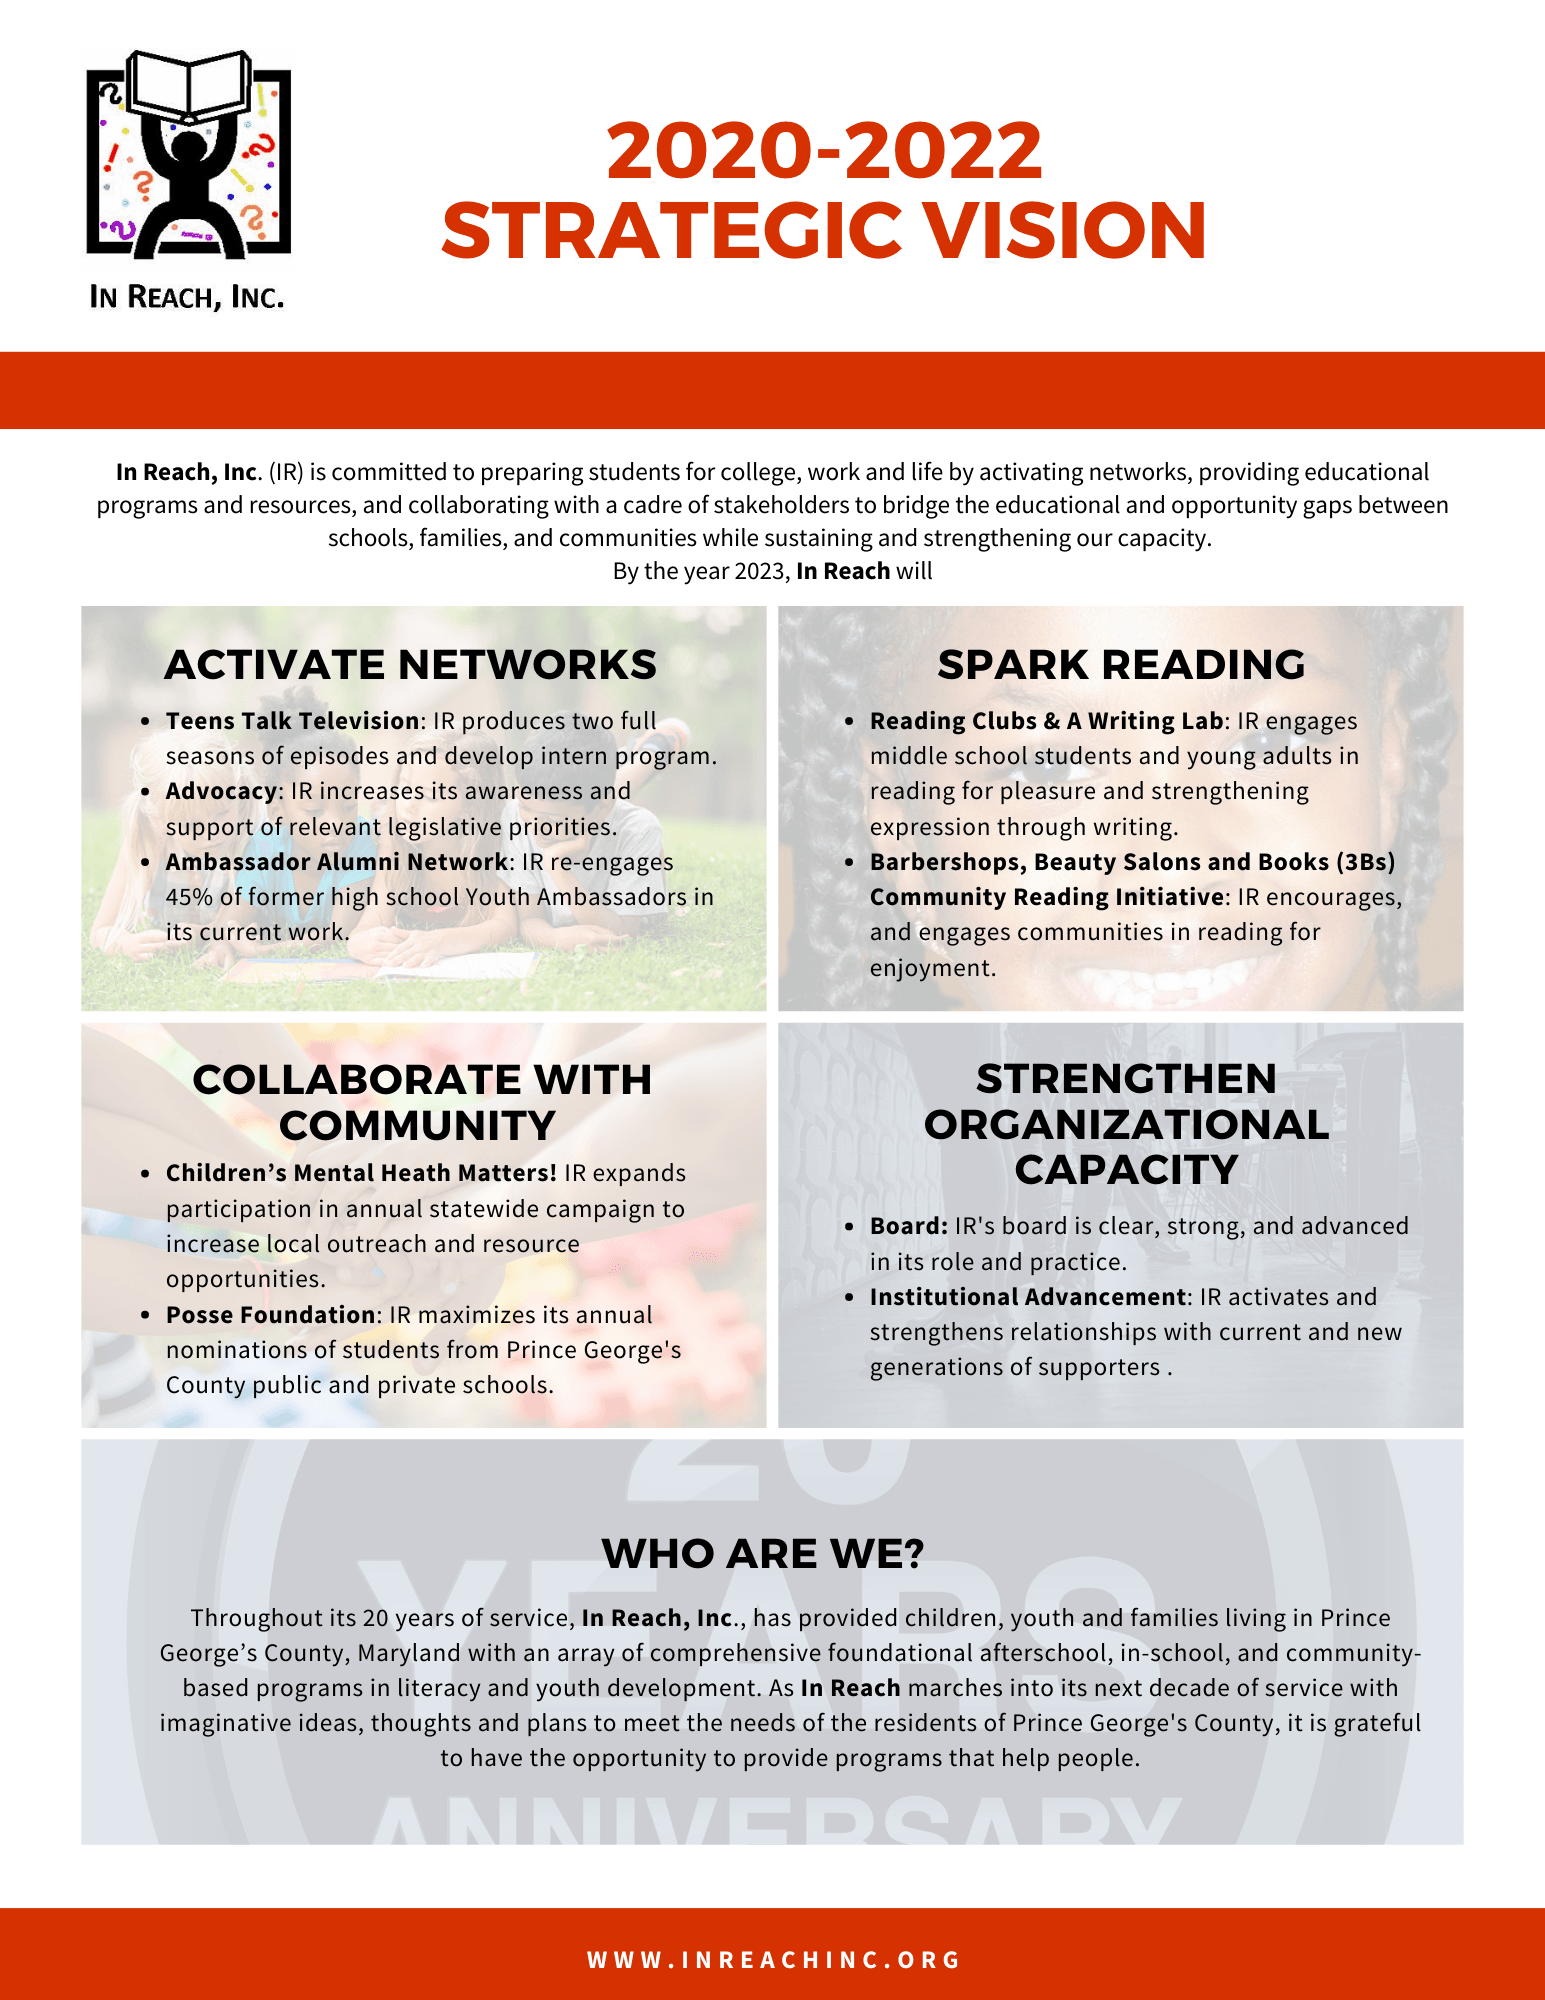 2020-2022 Strategic Vision Plan 